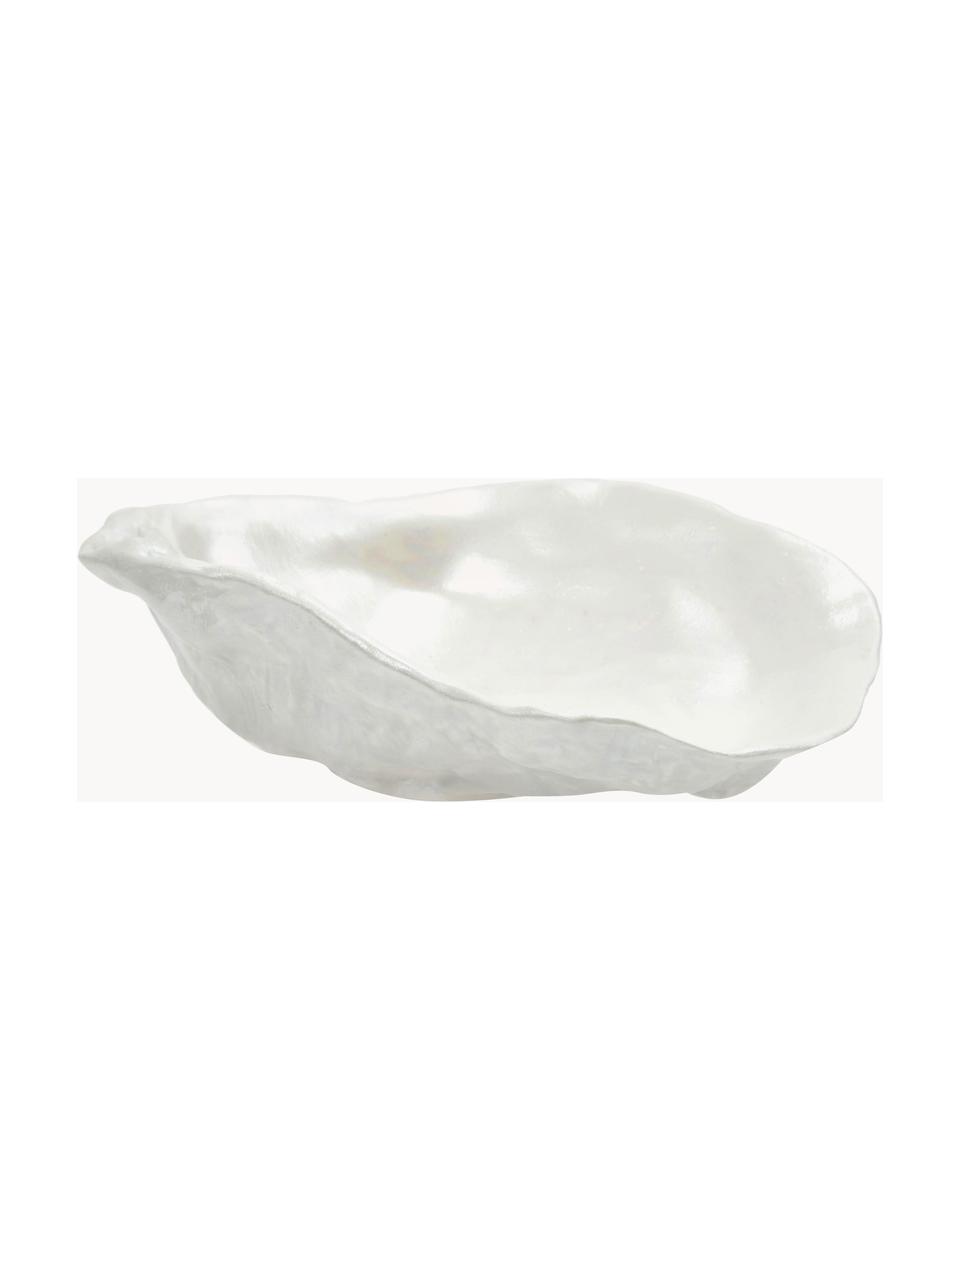 Miseczka do dipów z porcelany Kelia, 2 szt., Porcelana, Biały, S 13 x W 4 cm